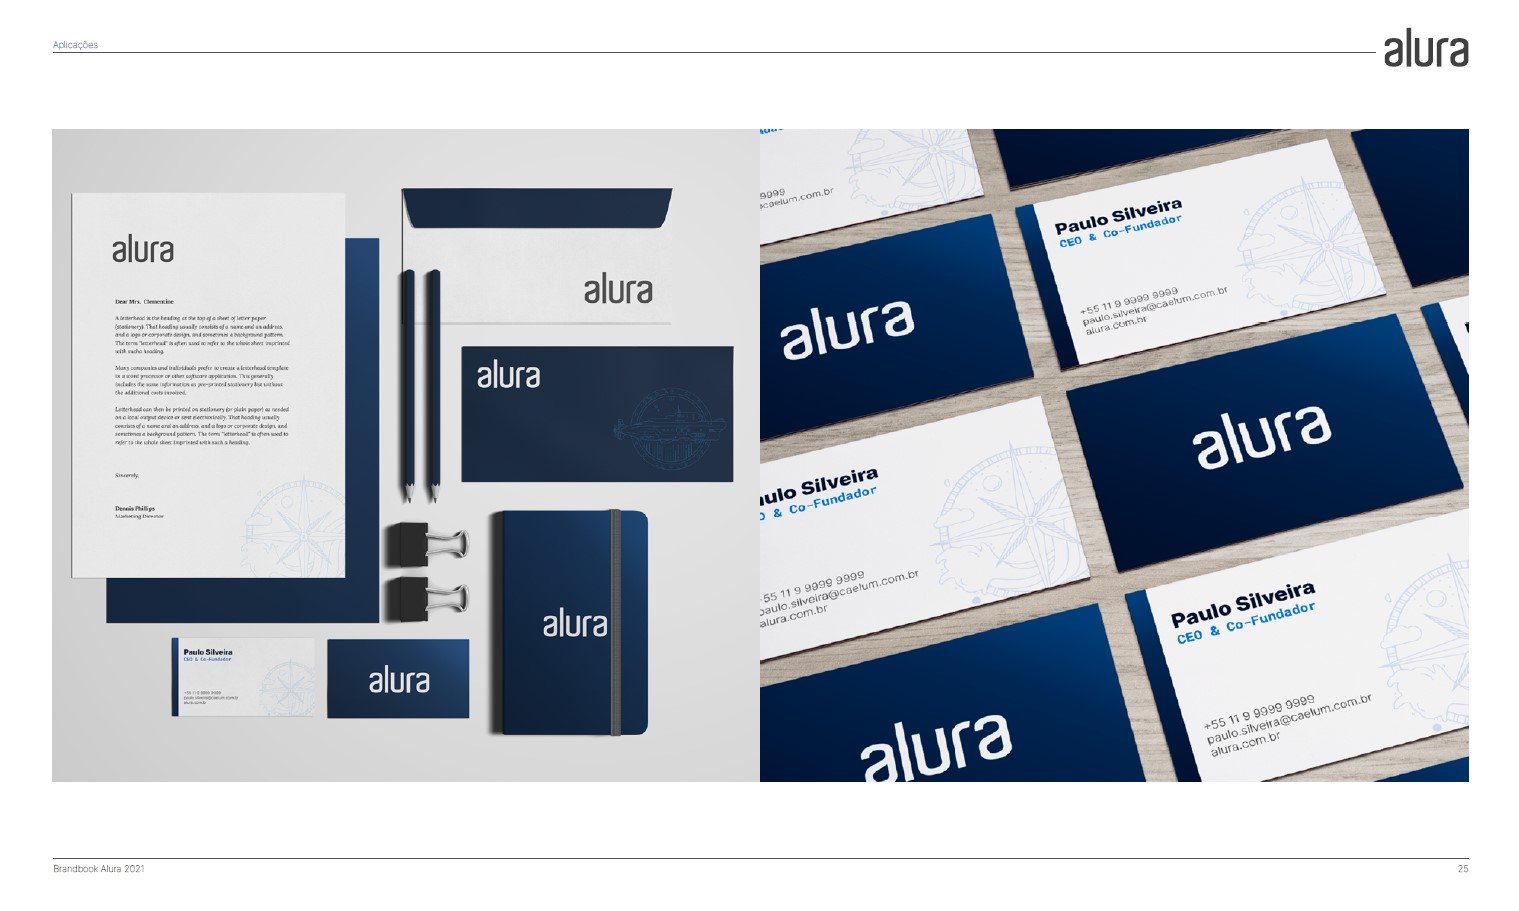 Imagem do manual de identidade da Alura, com exemplos de cartões de visitas, cadernos, envelopes.